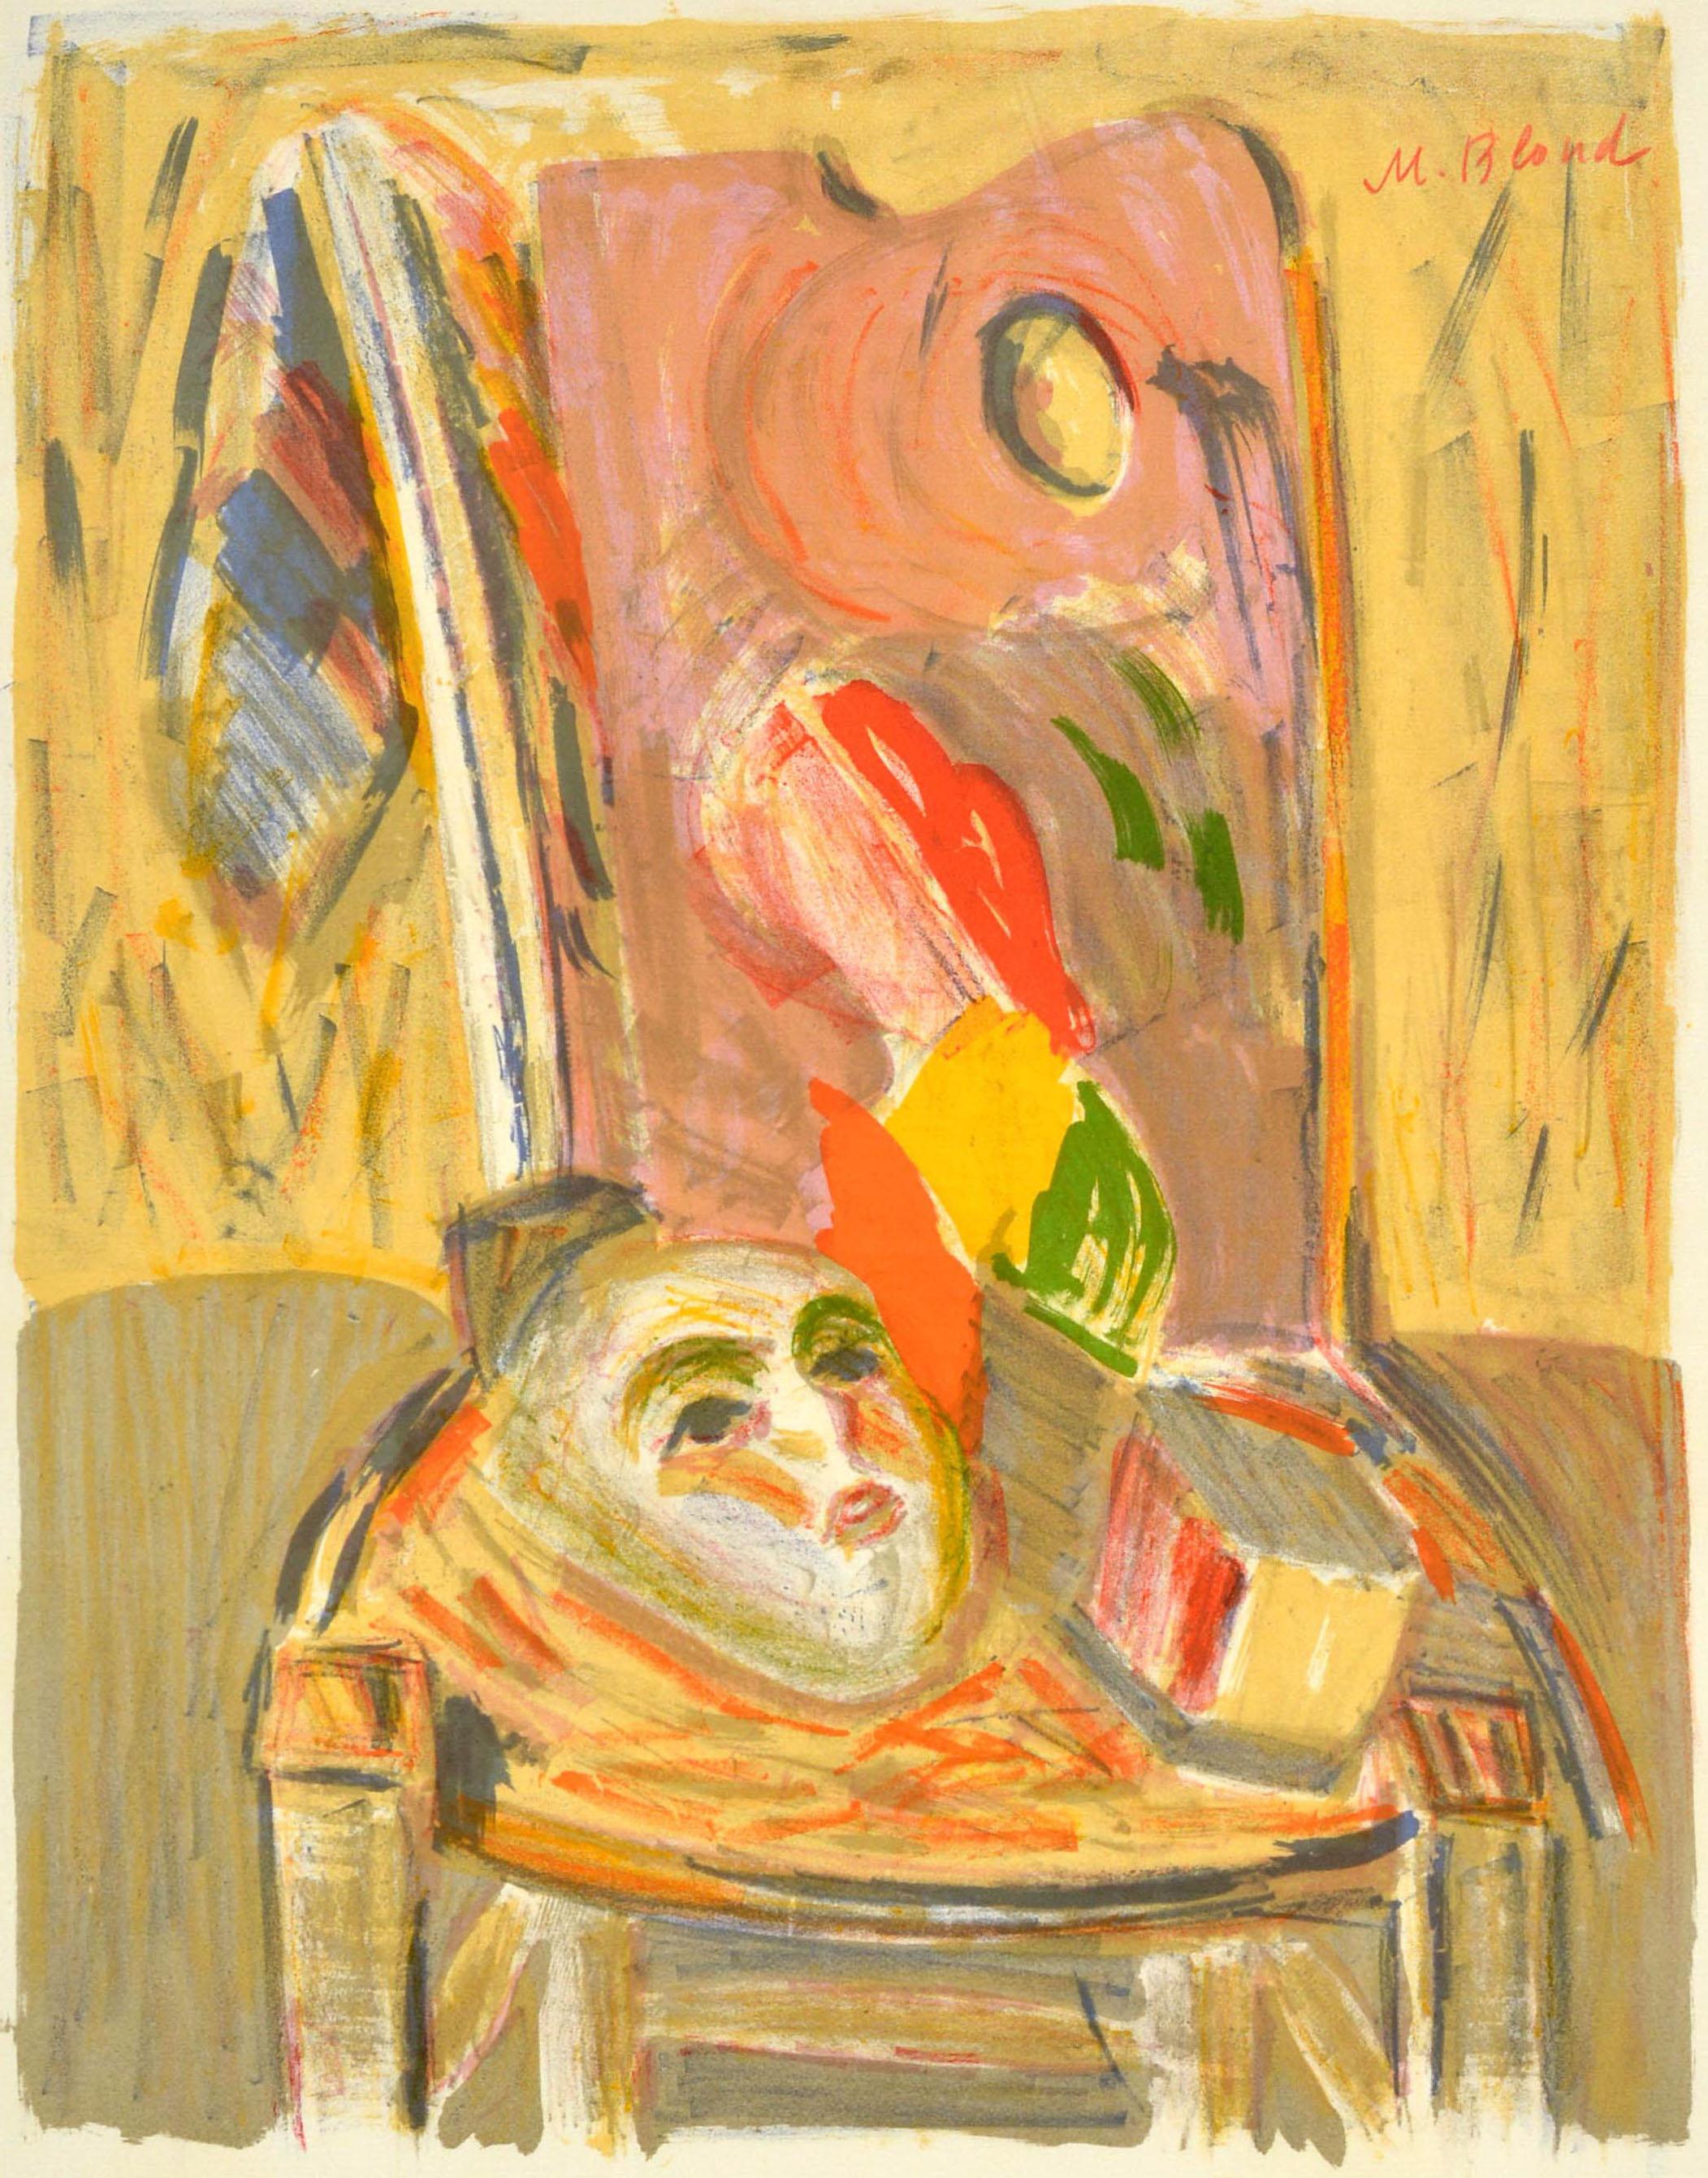 Affiche originale de l'exposition Grands Peintres Meconnus / Great Unknown Painters qui s'est tenue à la Galerie Durand Ruel à Paris du 5 au 21 octobre 1961. L'œuvre est signée M. By et représente un masque sur une chaise avec le texte de